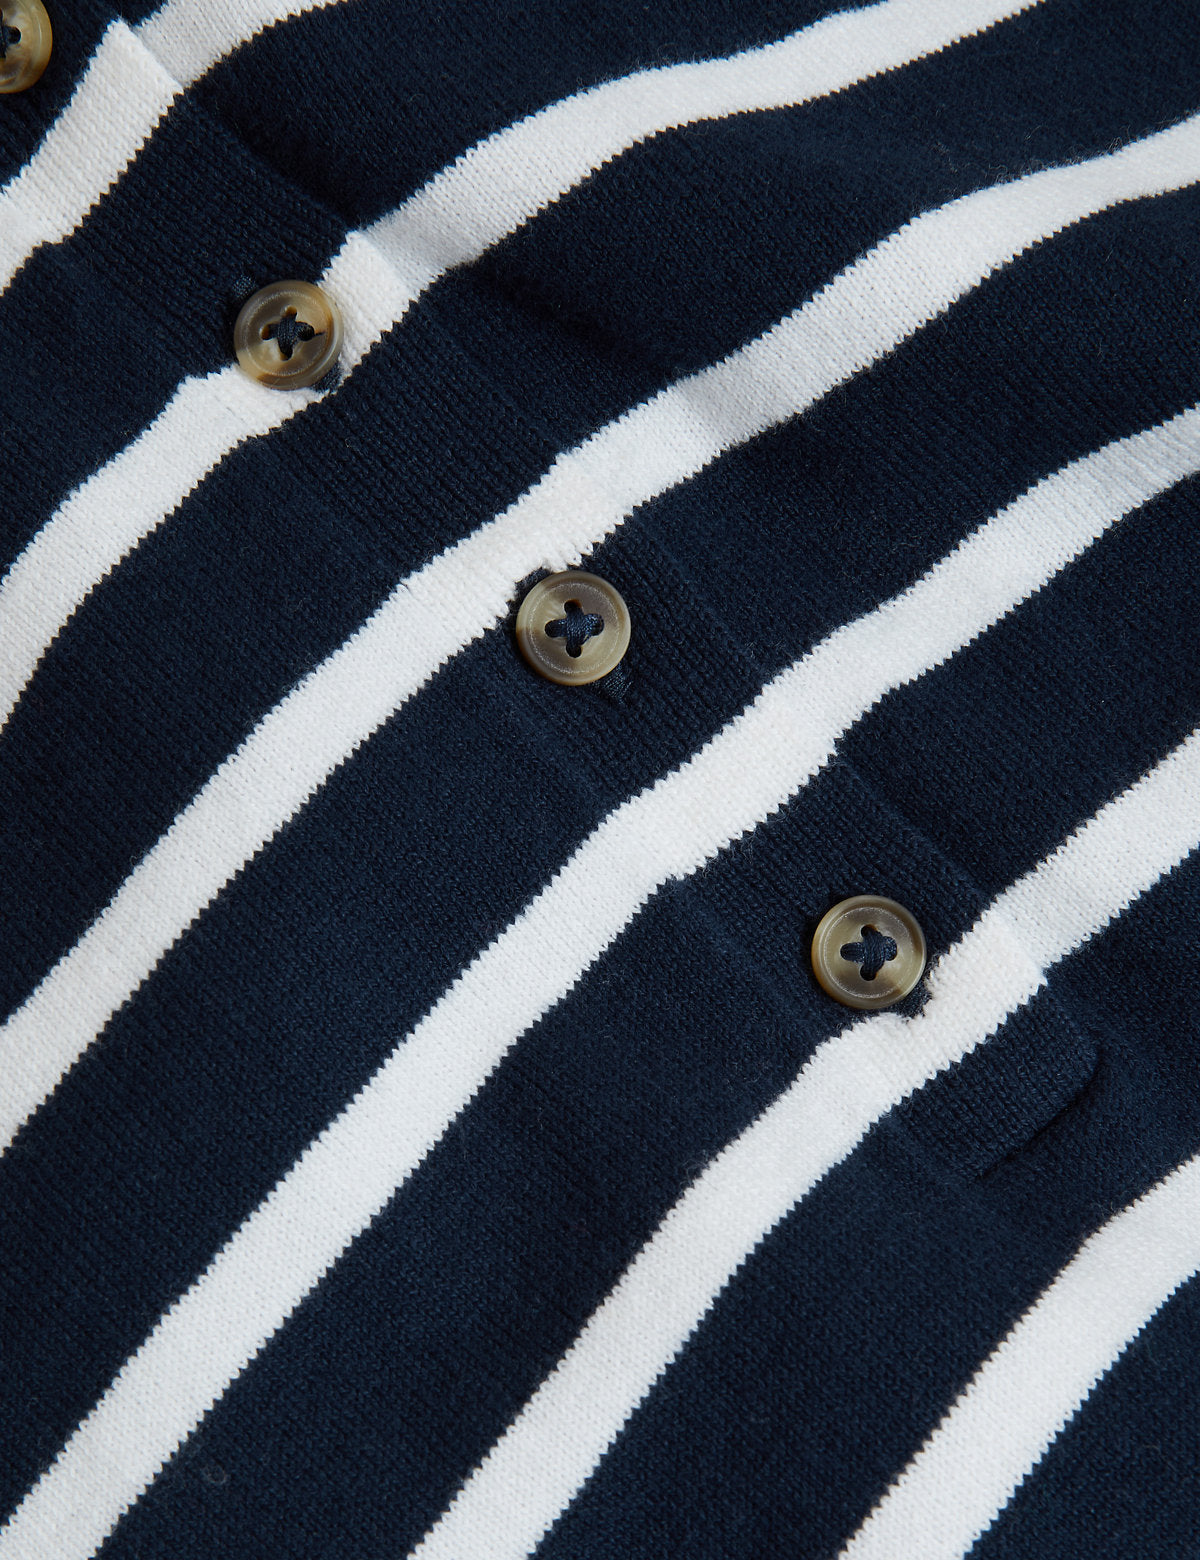 Cotton Rich Stripe Knit Top